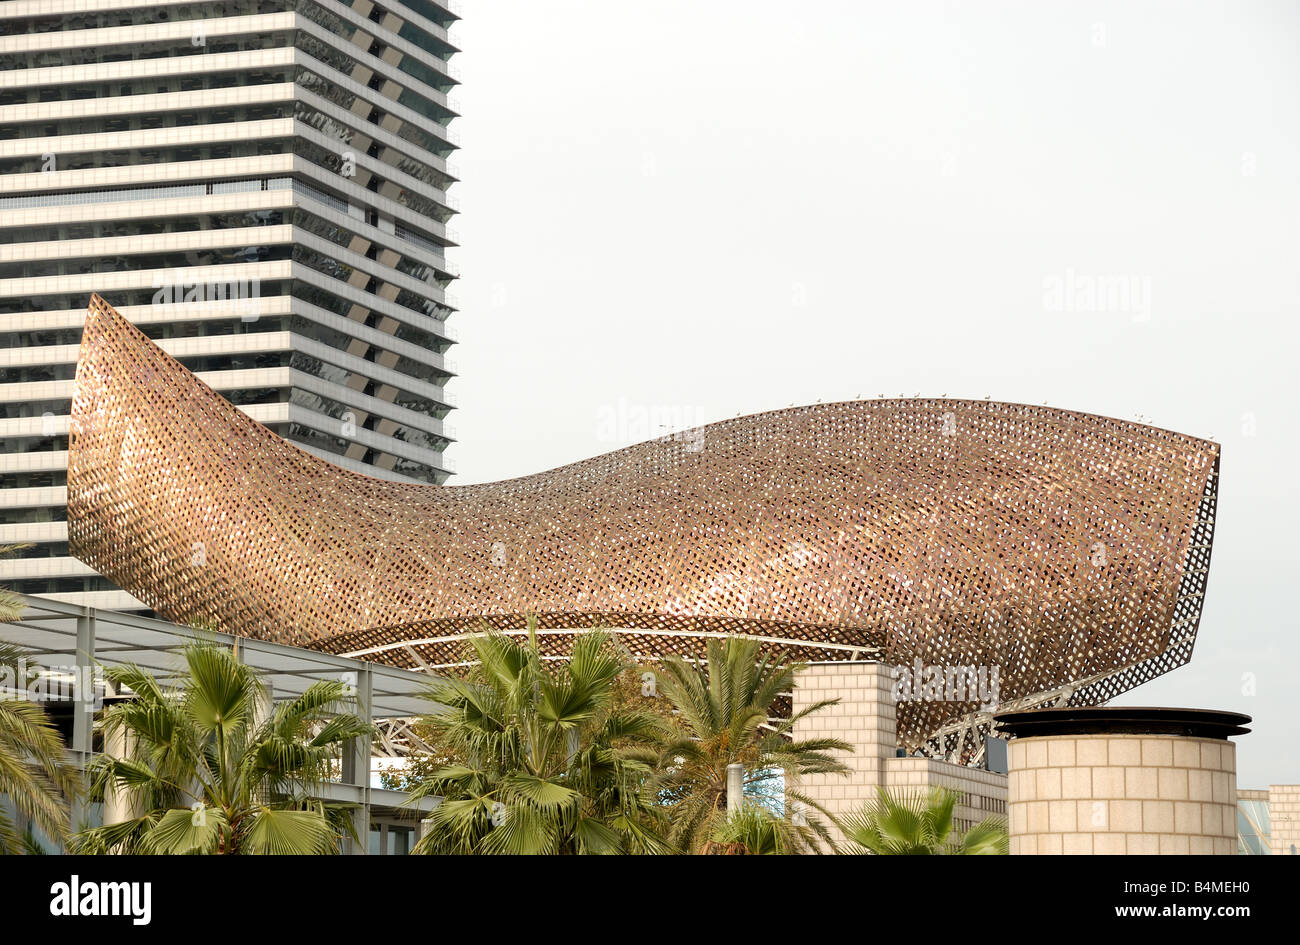 Frank Gery whale sculpture sur la plage de Barcelone Espagne Banque D'Images